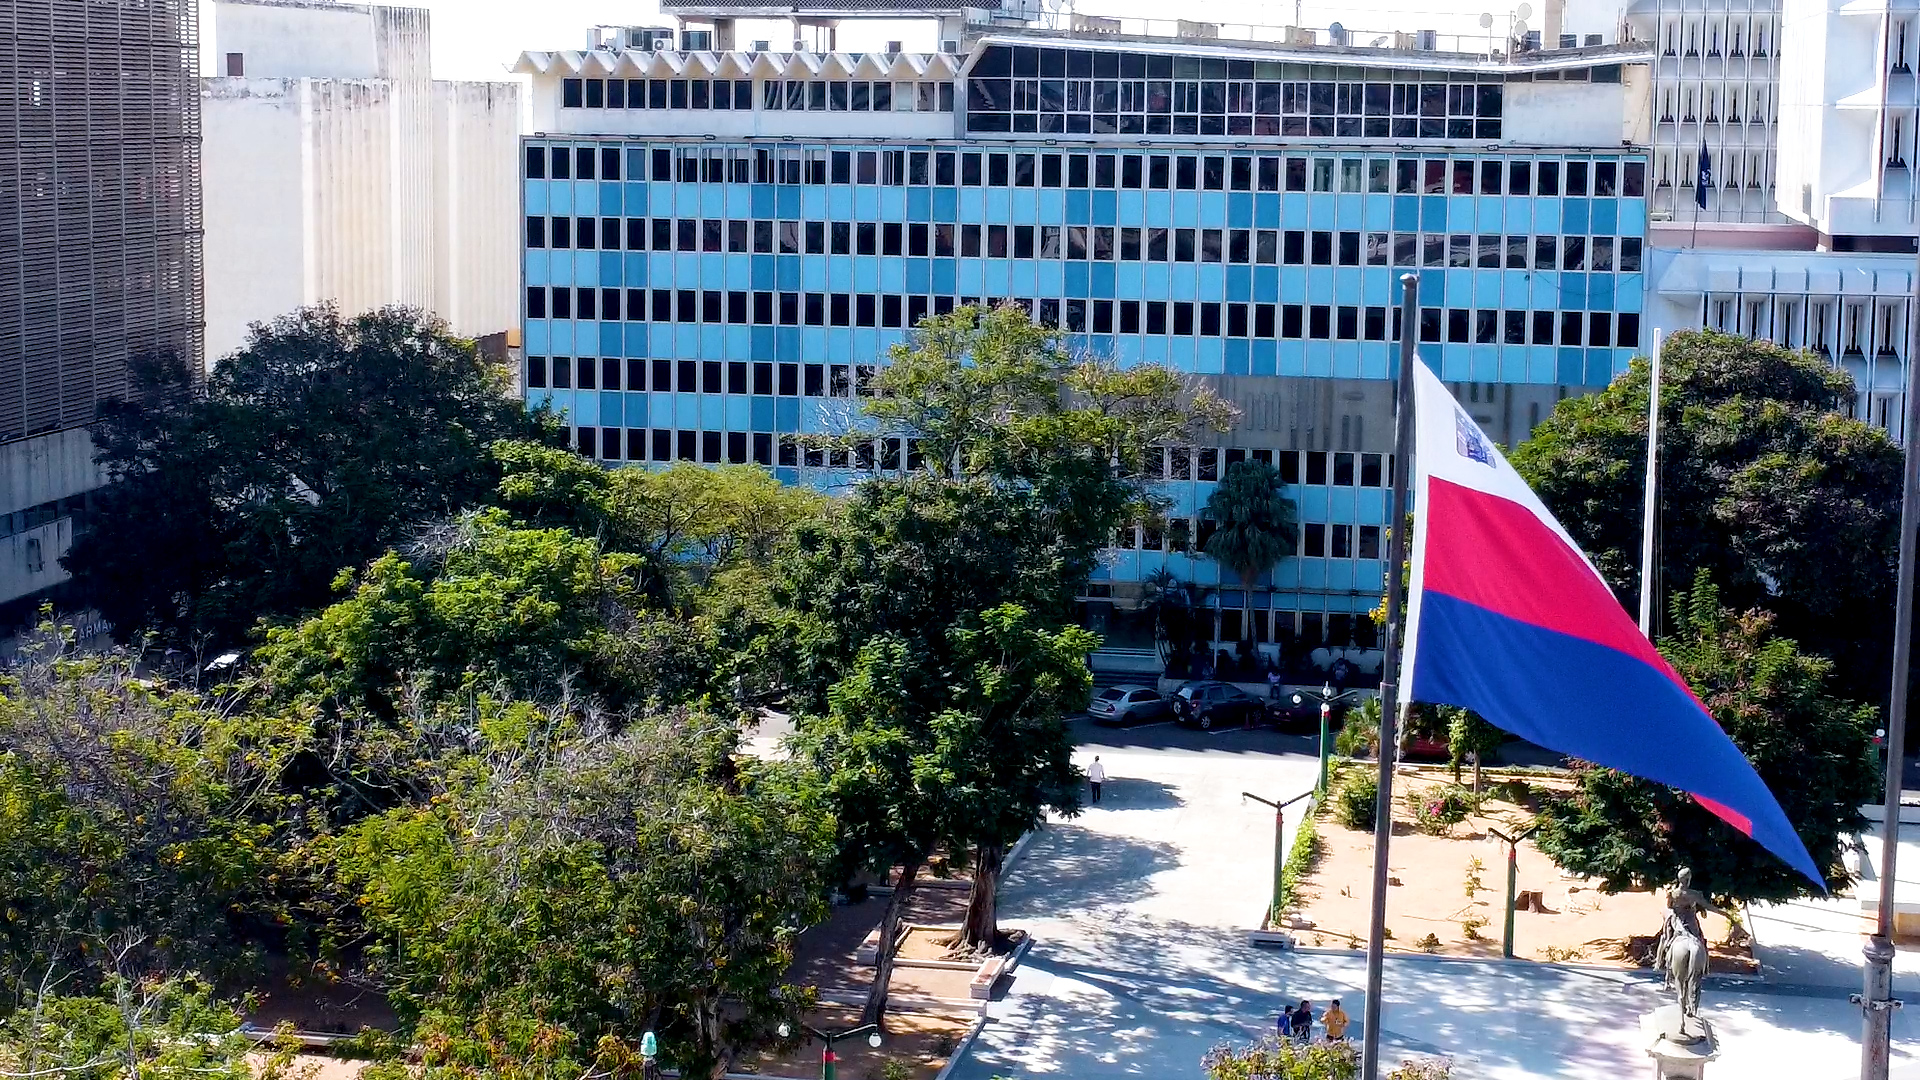 Conoce la bandera de Maracaibo con más de 400 años de historia